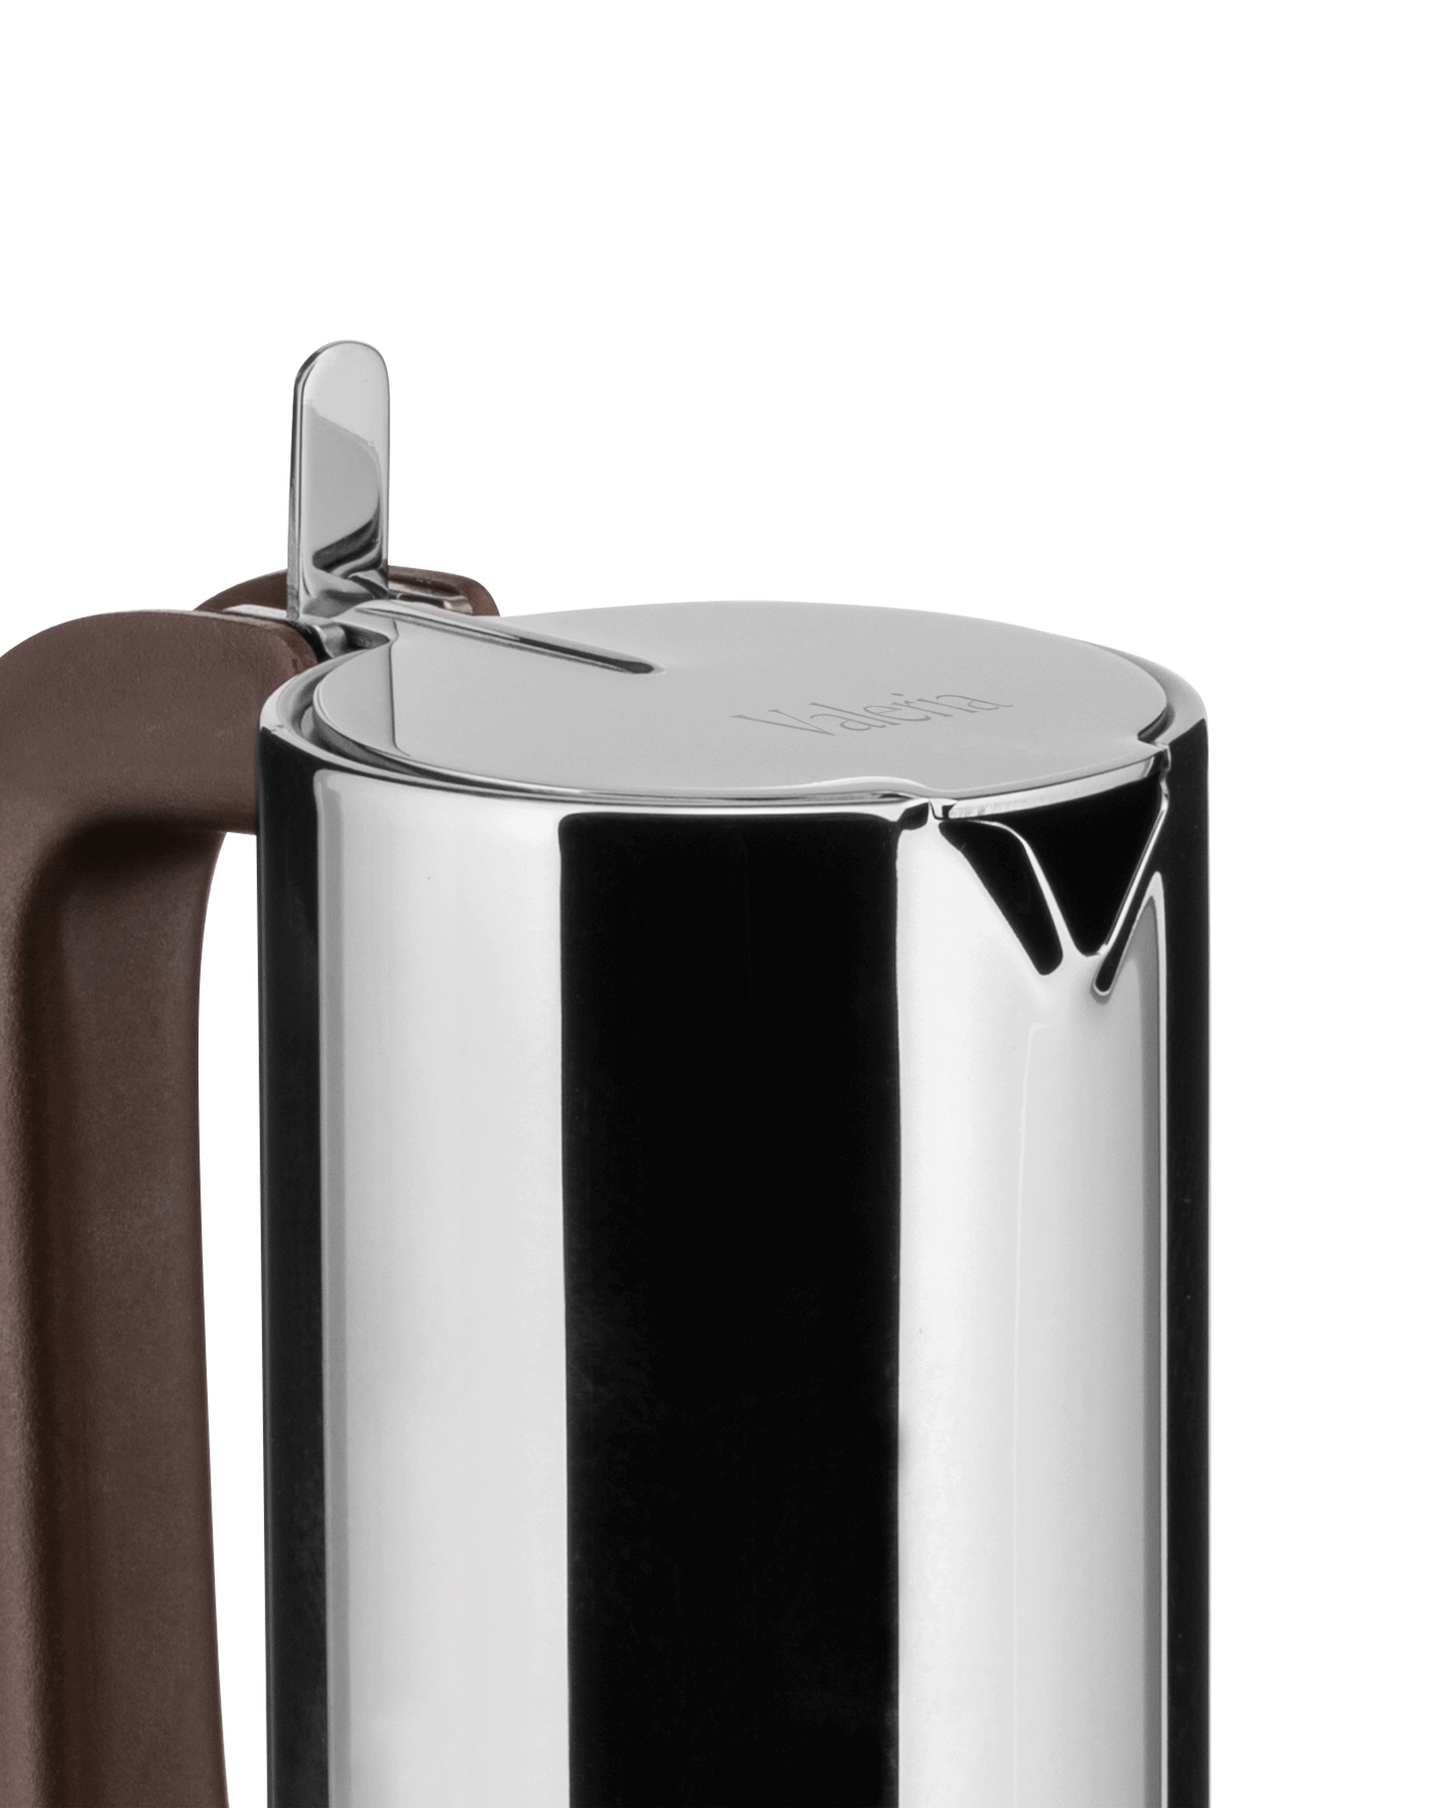 Dark Slate Gray Sapper Espresso Coffee Maker - 3 Cups